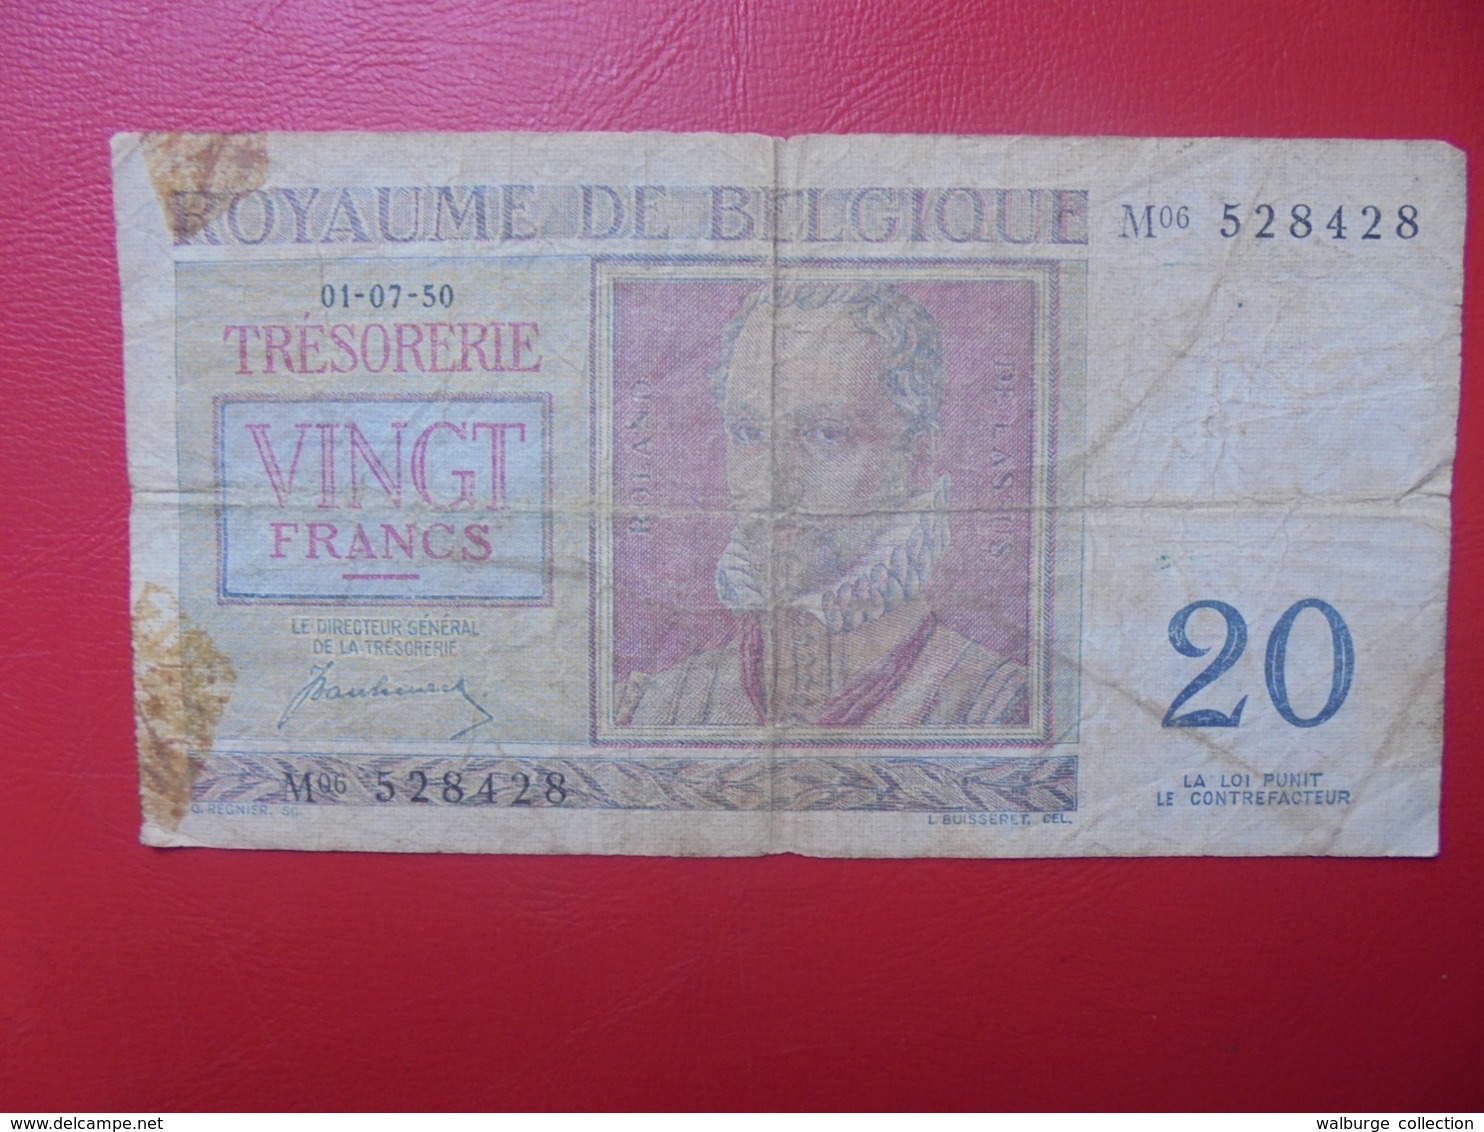 BELGIQUE 20 FRANCS 1950 CIRCULER (B.8) - 20 Francs